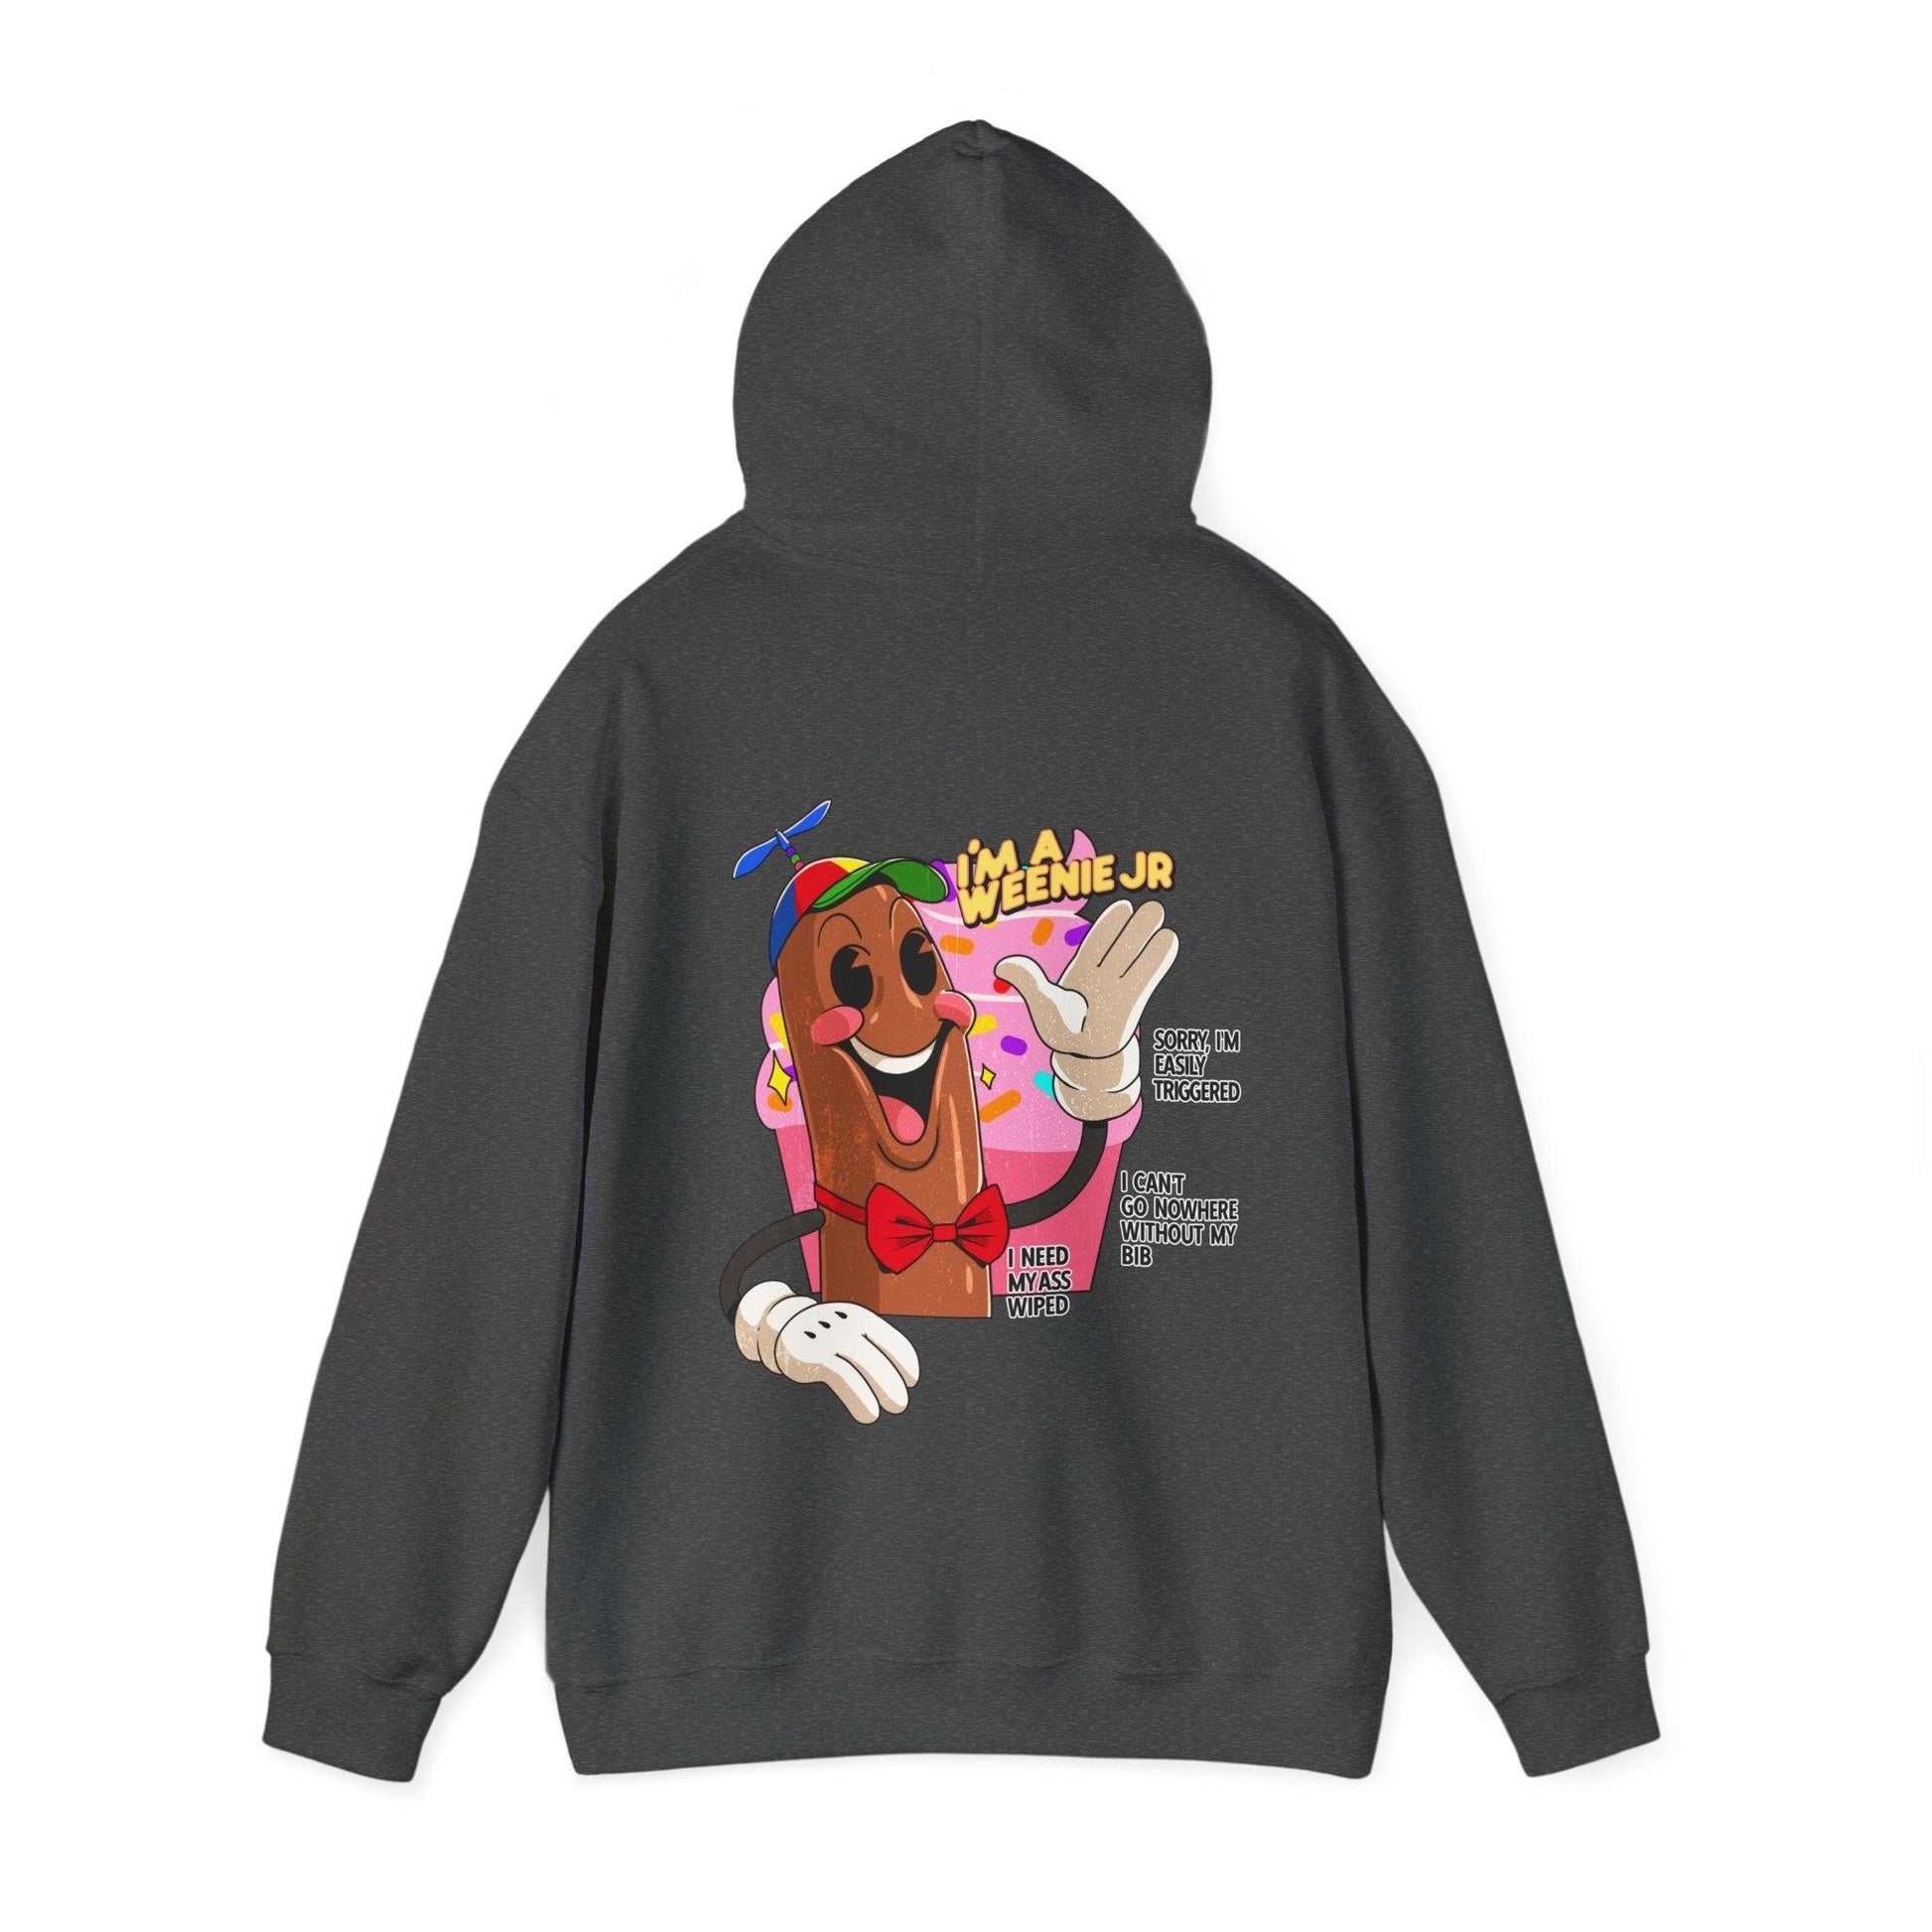 Weenie Jr - Unisex Heavy Blend Hooded Sweatshirt - Shaneinvasion